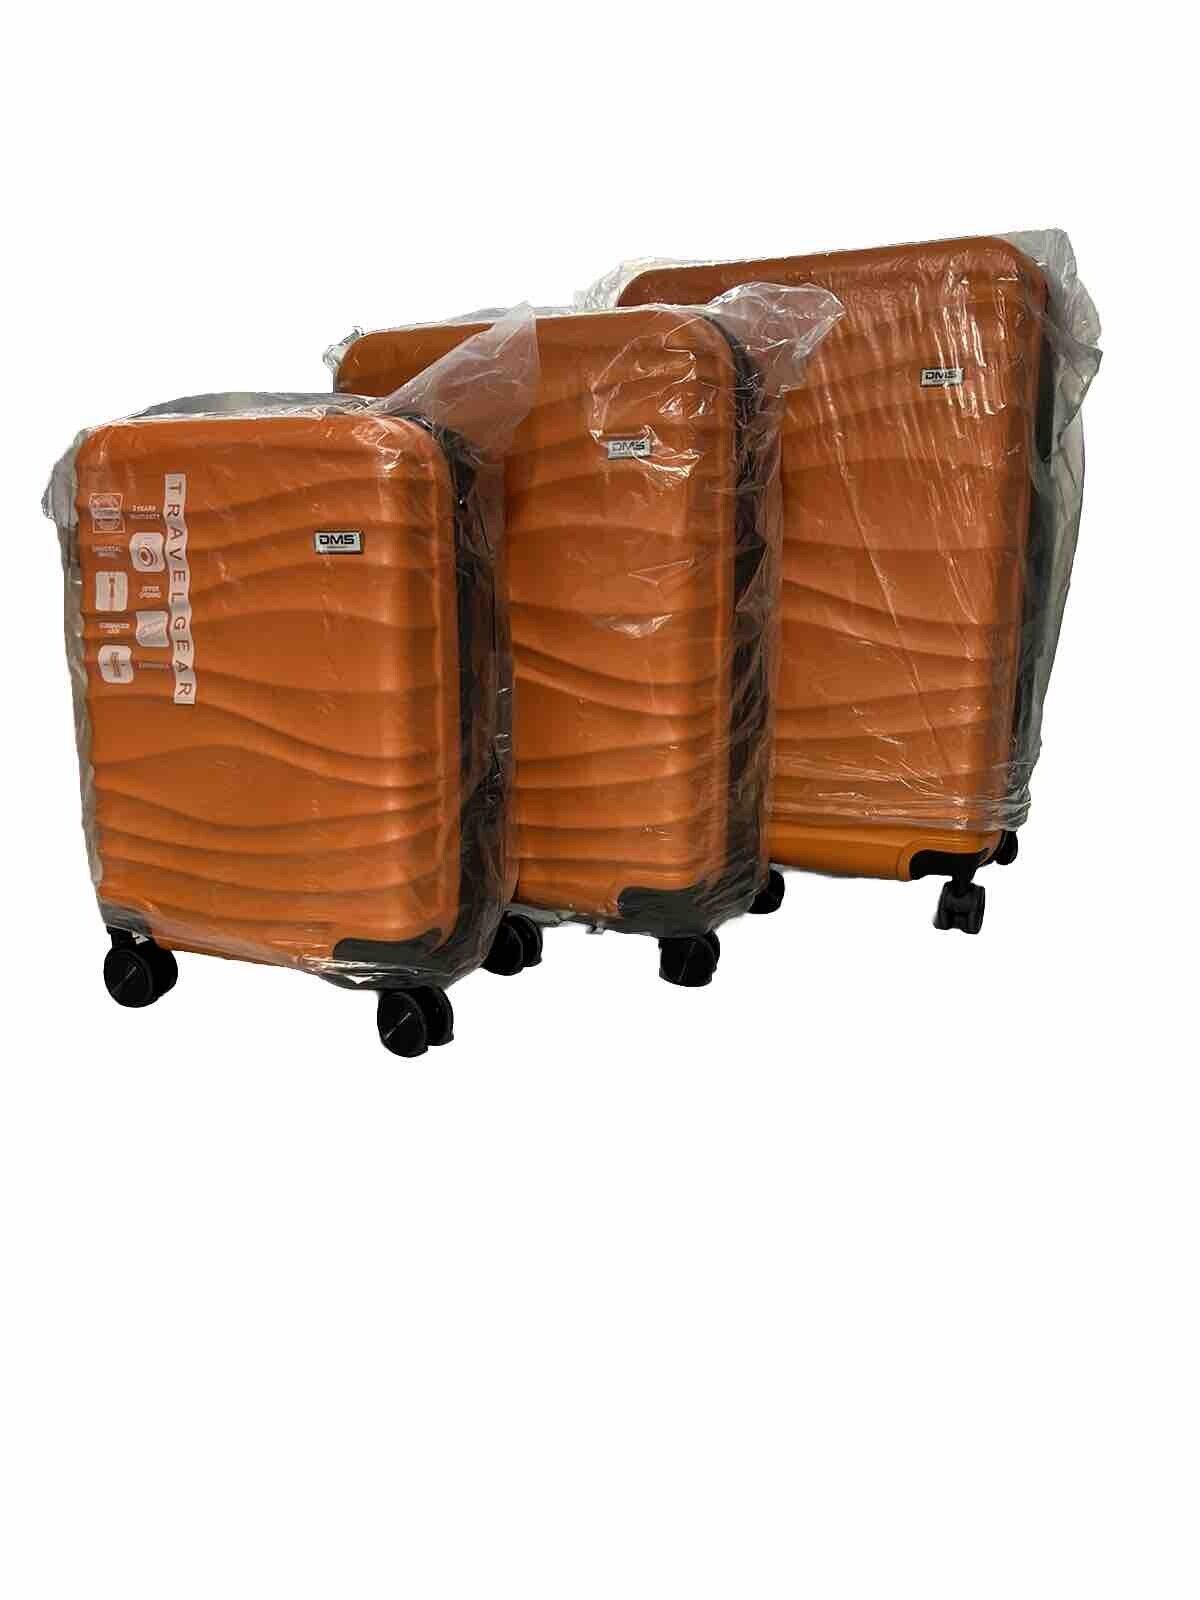 DMS 7tlg Hartschalenkofferset Koffer Reisekoffer Trolley orange ABS-Hartschale